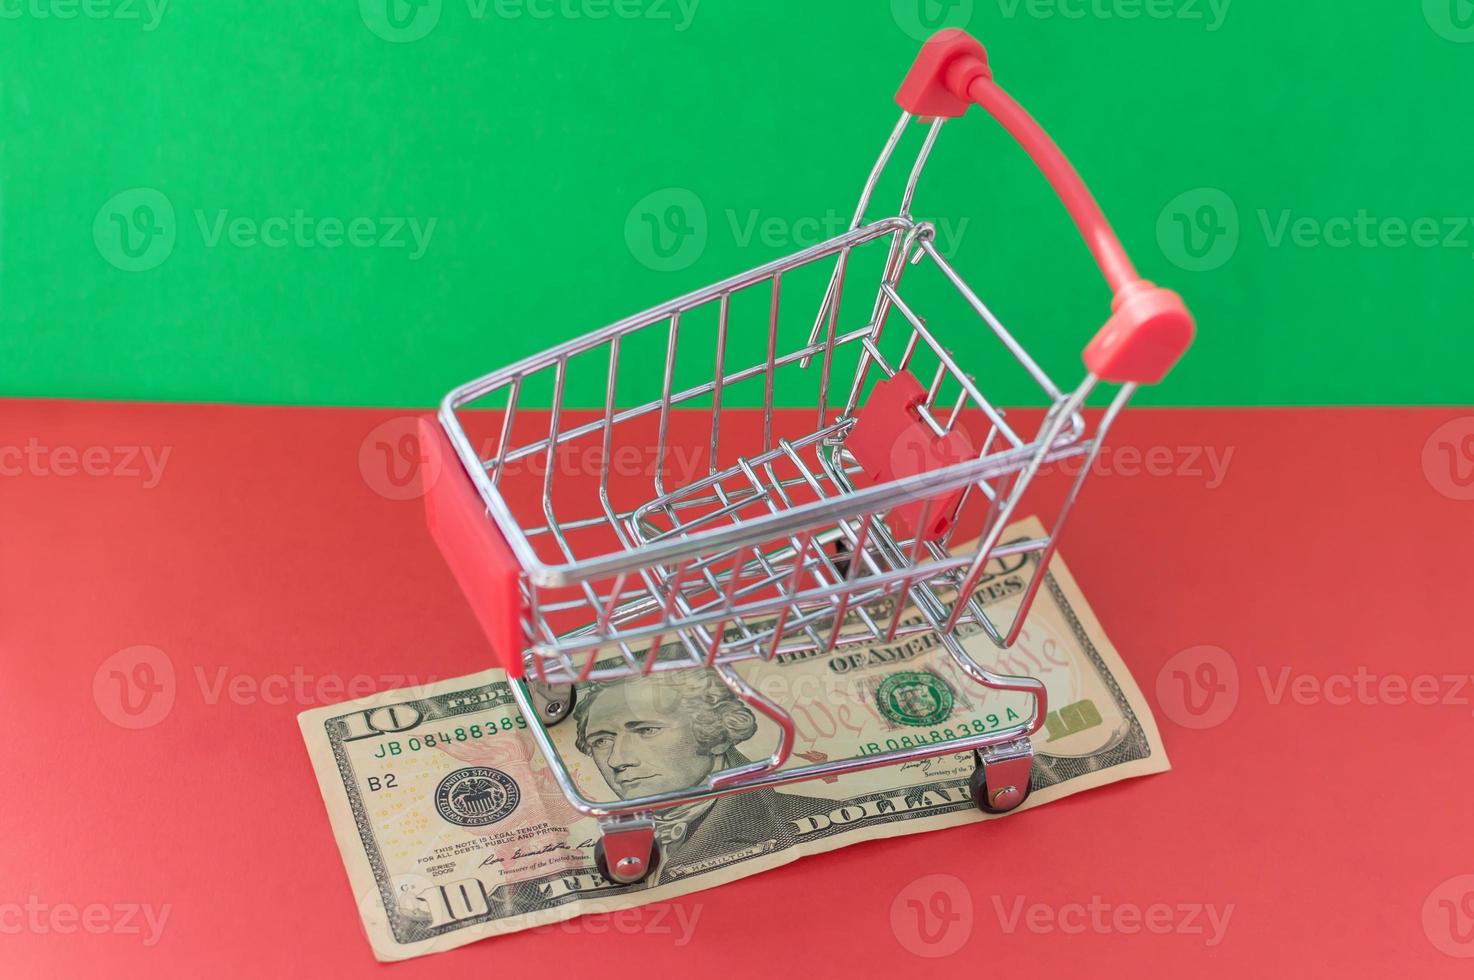 una cesta de la compra llena de medicamentos se encuentra en un billete de banco sobre un fondo rojo-verde. el concepto de inflación y poder adquisitivo. foto